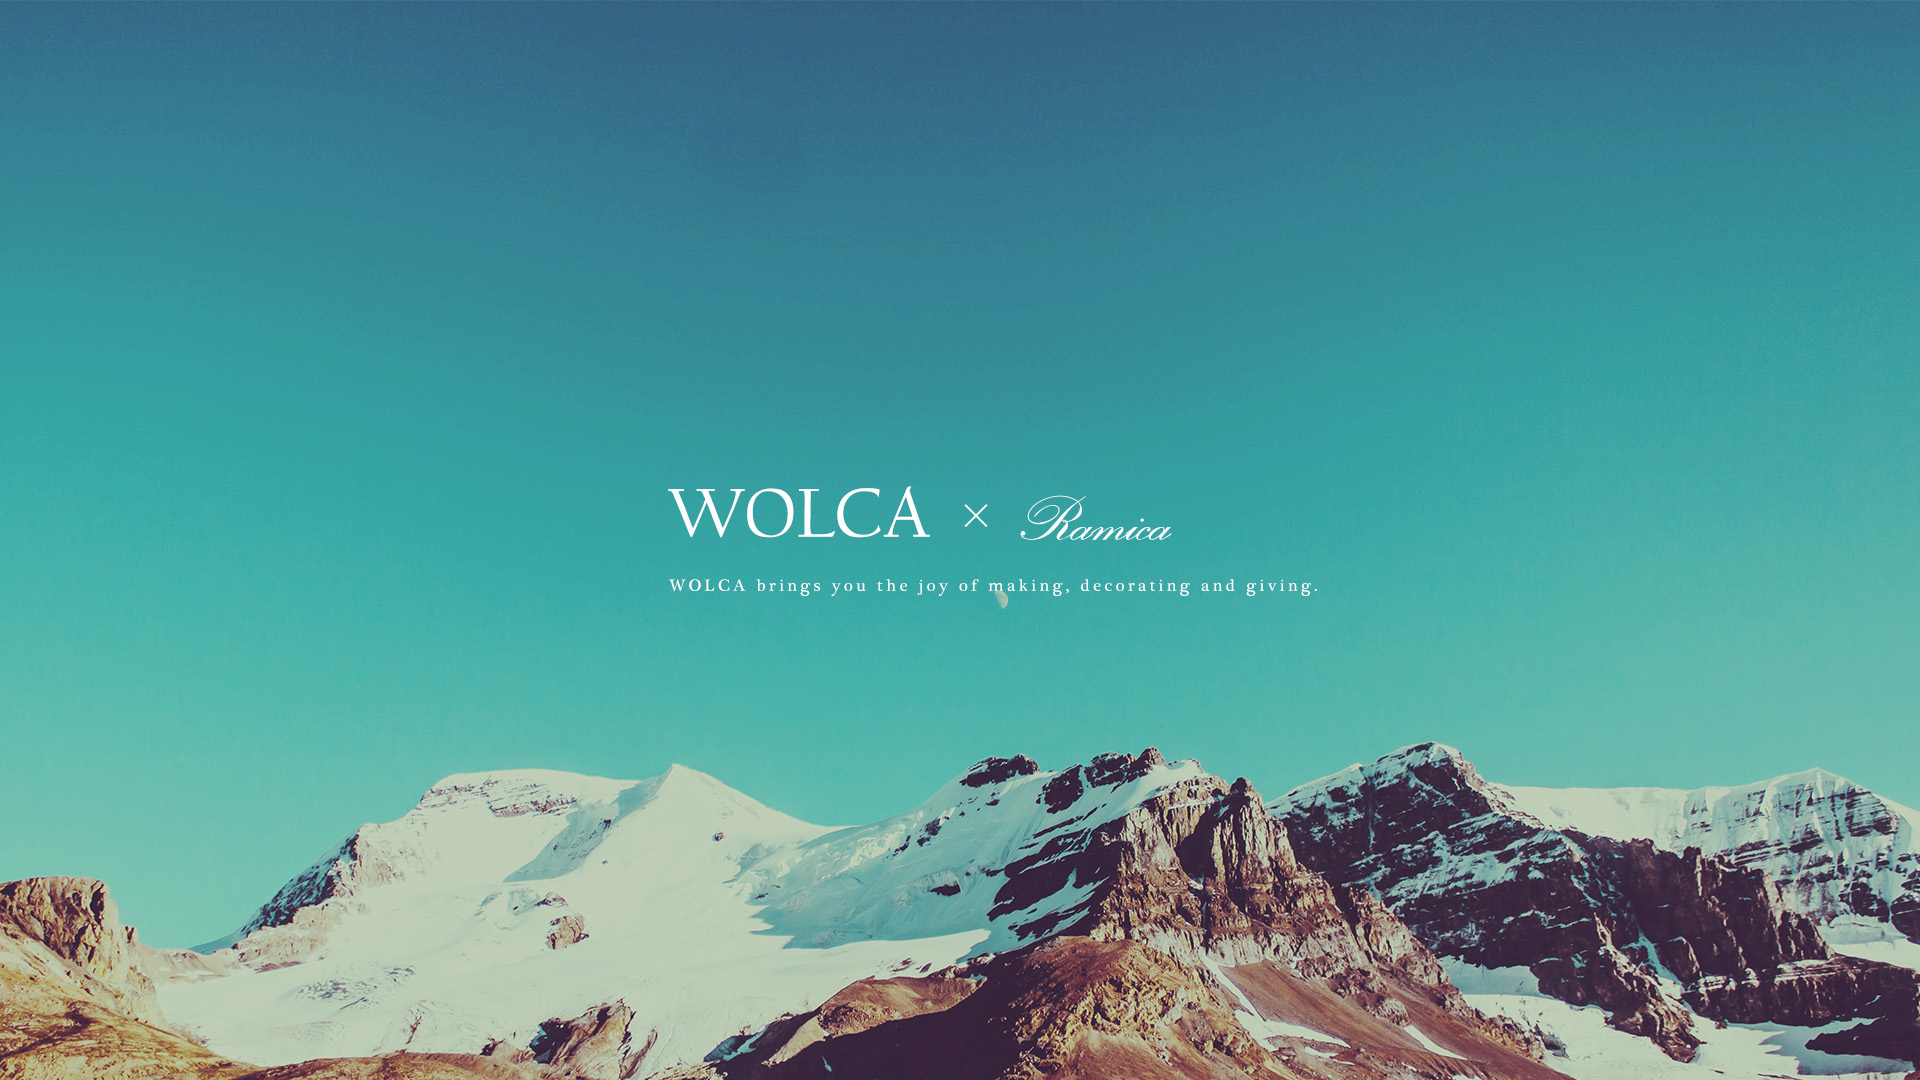 デスクトップpc用壁紙 山ガールの為の可愛い写真 Wolca